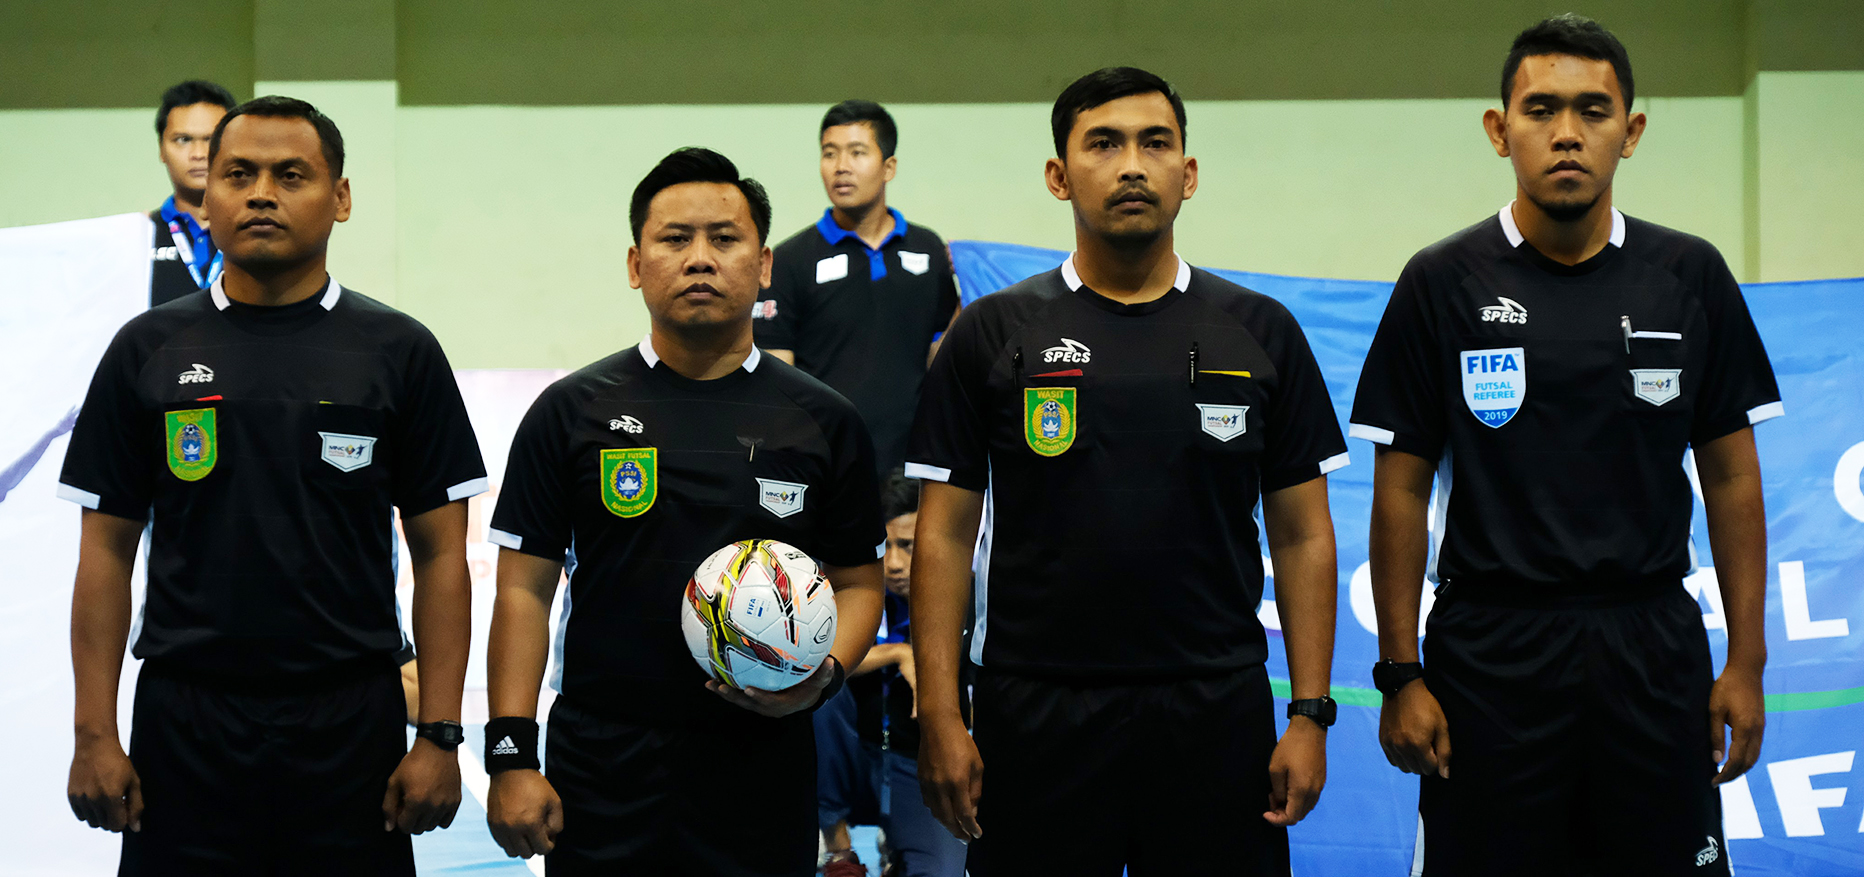 Aturan Baru Futsal Pastikan Semangat Respect dan Fair Play Dalam Pertandingan